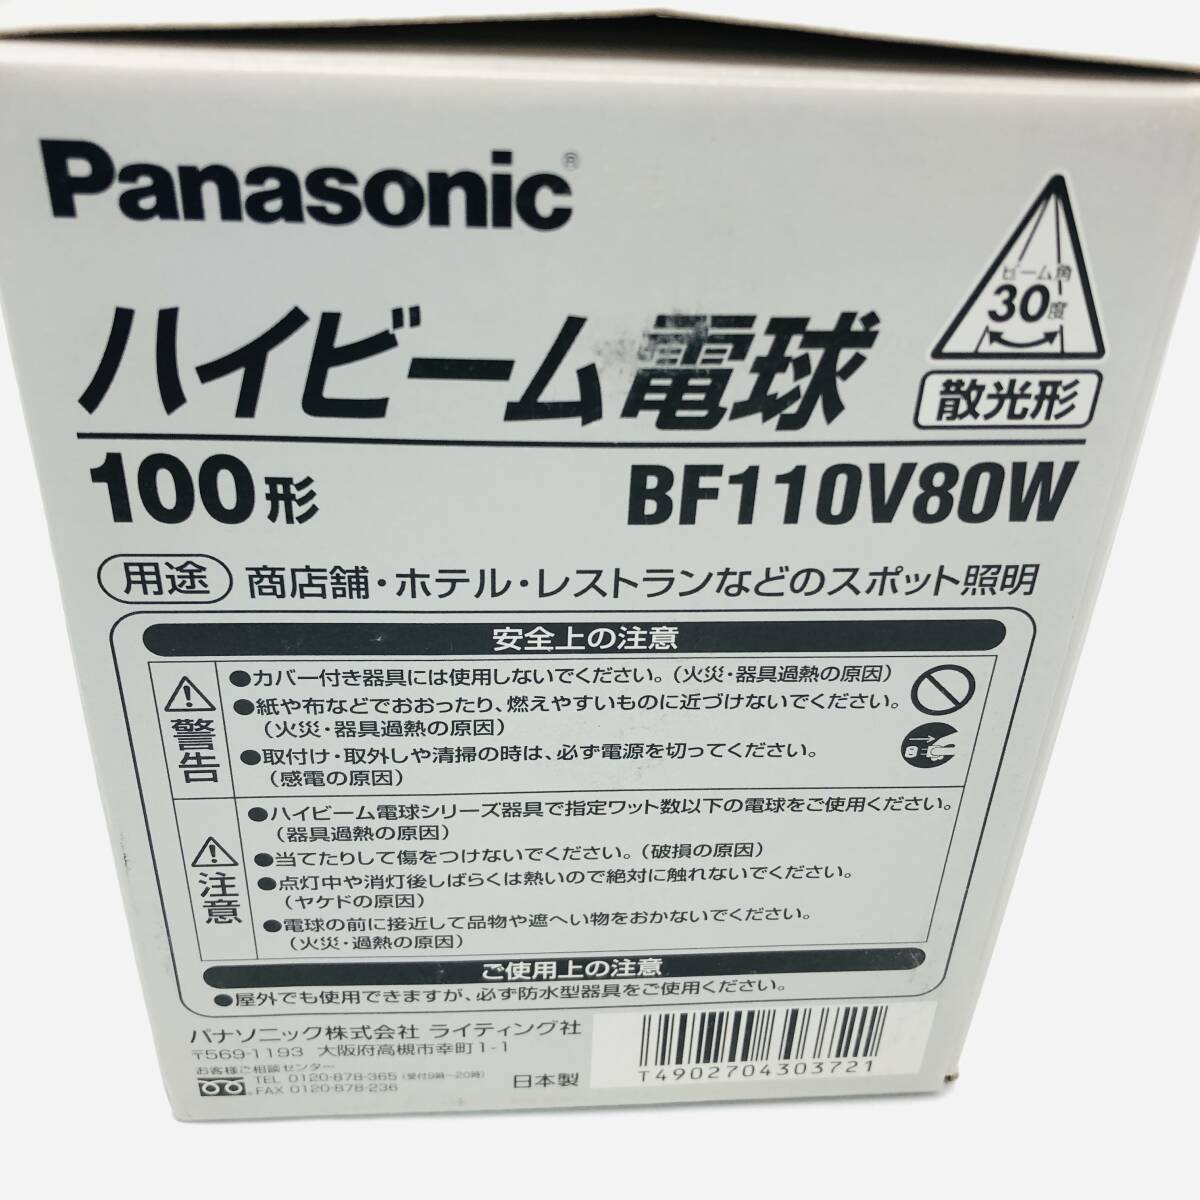 [ не использовался ]Panasonic Panasonic дальний свет лампа BF110V80W 3 шт. комплект . свет форма 100 форма спот освещение BF110V80W / ot-0501-sw